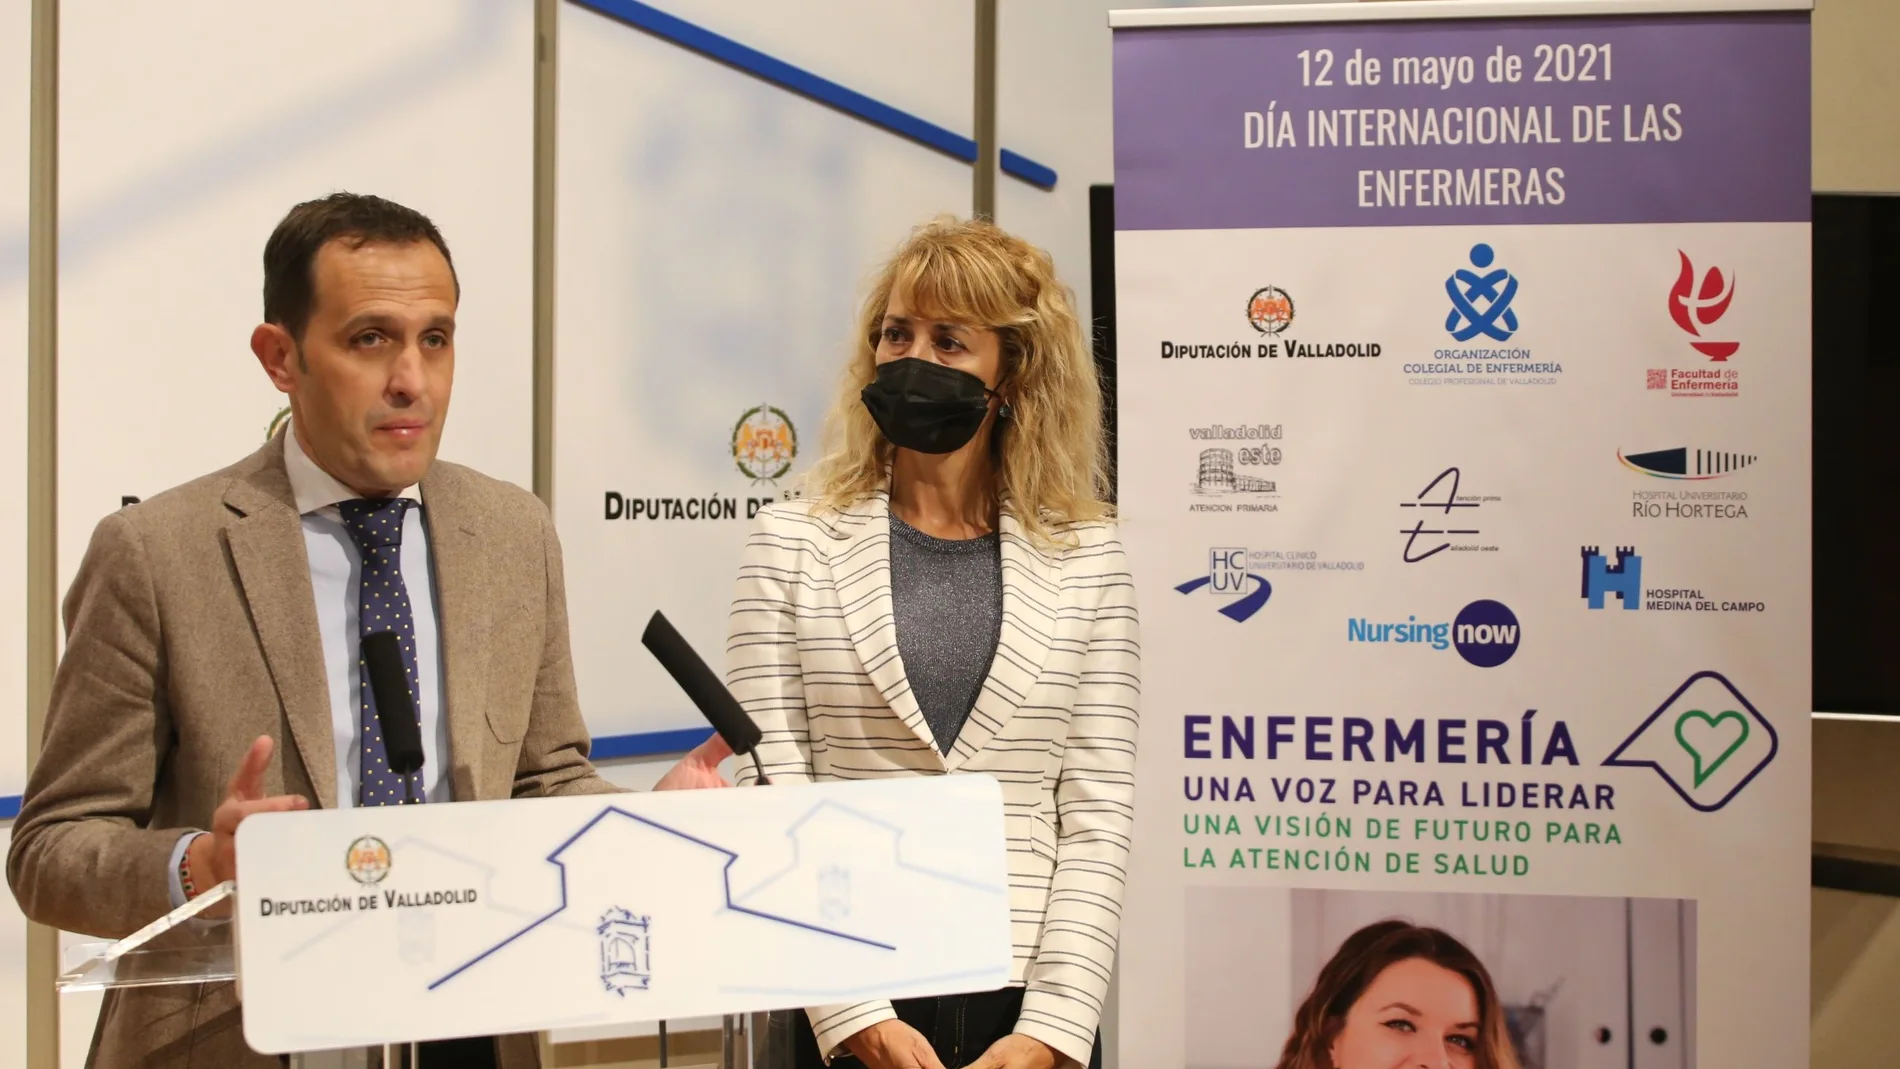 El presidente de la Diputación de Valladolid, Conrado íscar, atiende a la prensa junto a la presidente del Colegio de Enfermería de Valladolid, Silvia Sáez